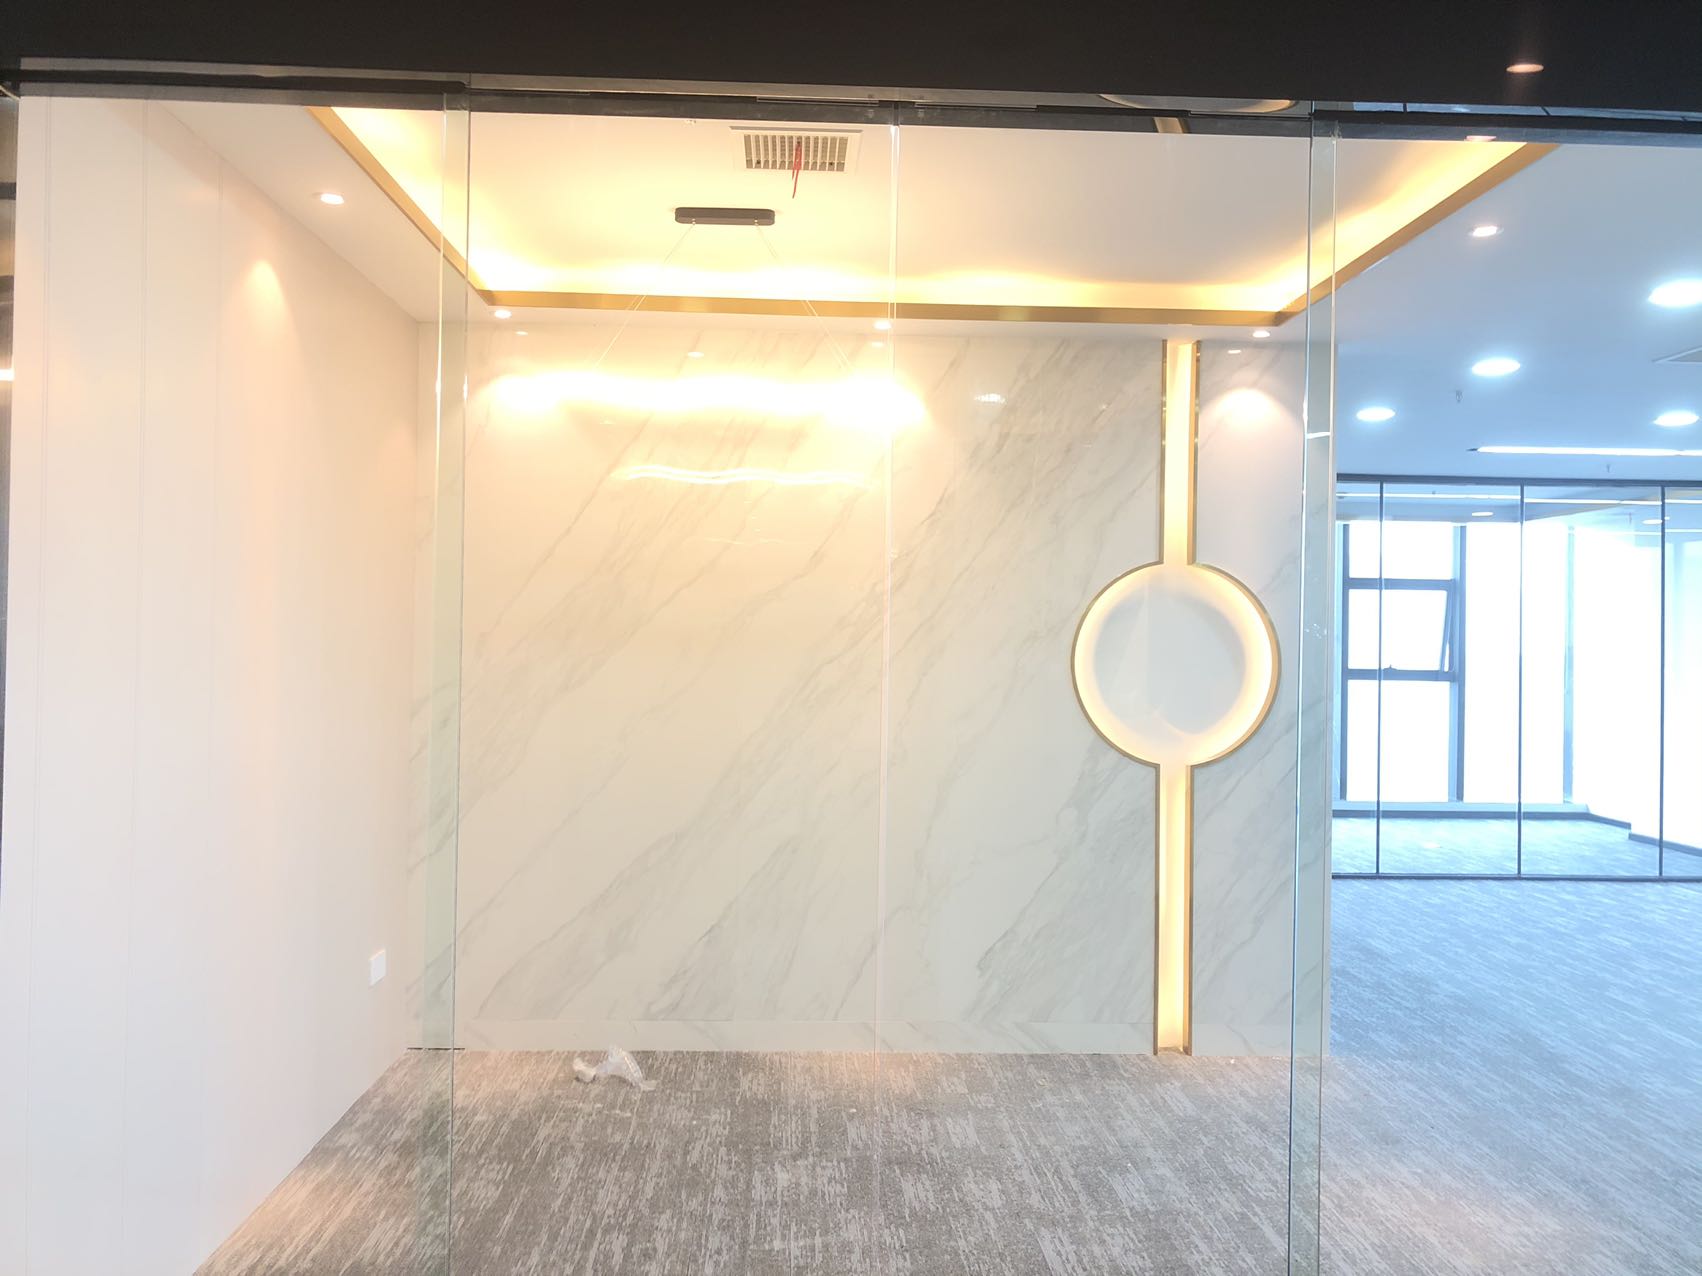 成华区万科砖石广场163平精装办公室带家具 户型方正 采光通透